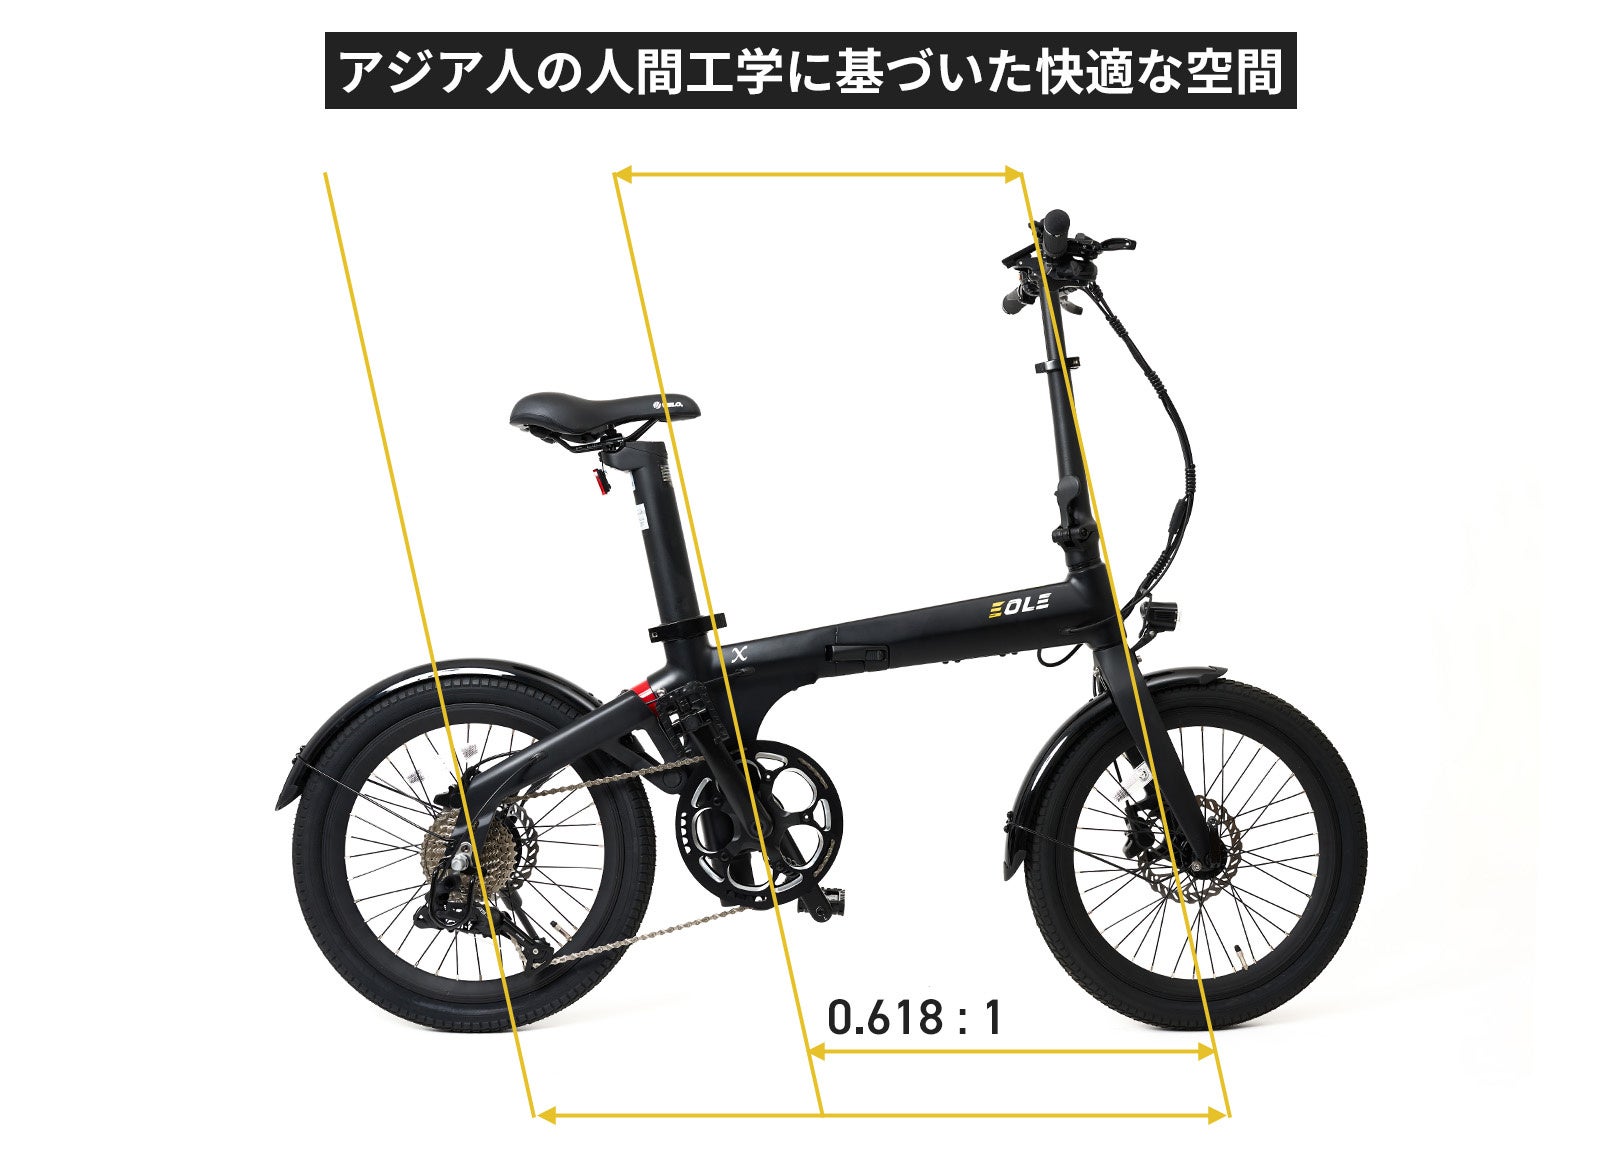 今ヨーロッパで話題の美しいデザインと高性能を兼ね備えた、近未来型折り畳み電動自転車！「Morfuns EOLE X」が応援購入サイトMakuakeにて日本初登場のサブ画像4